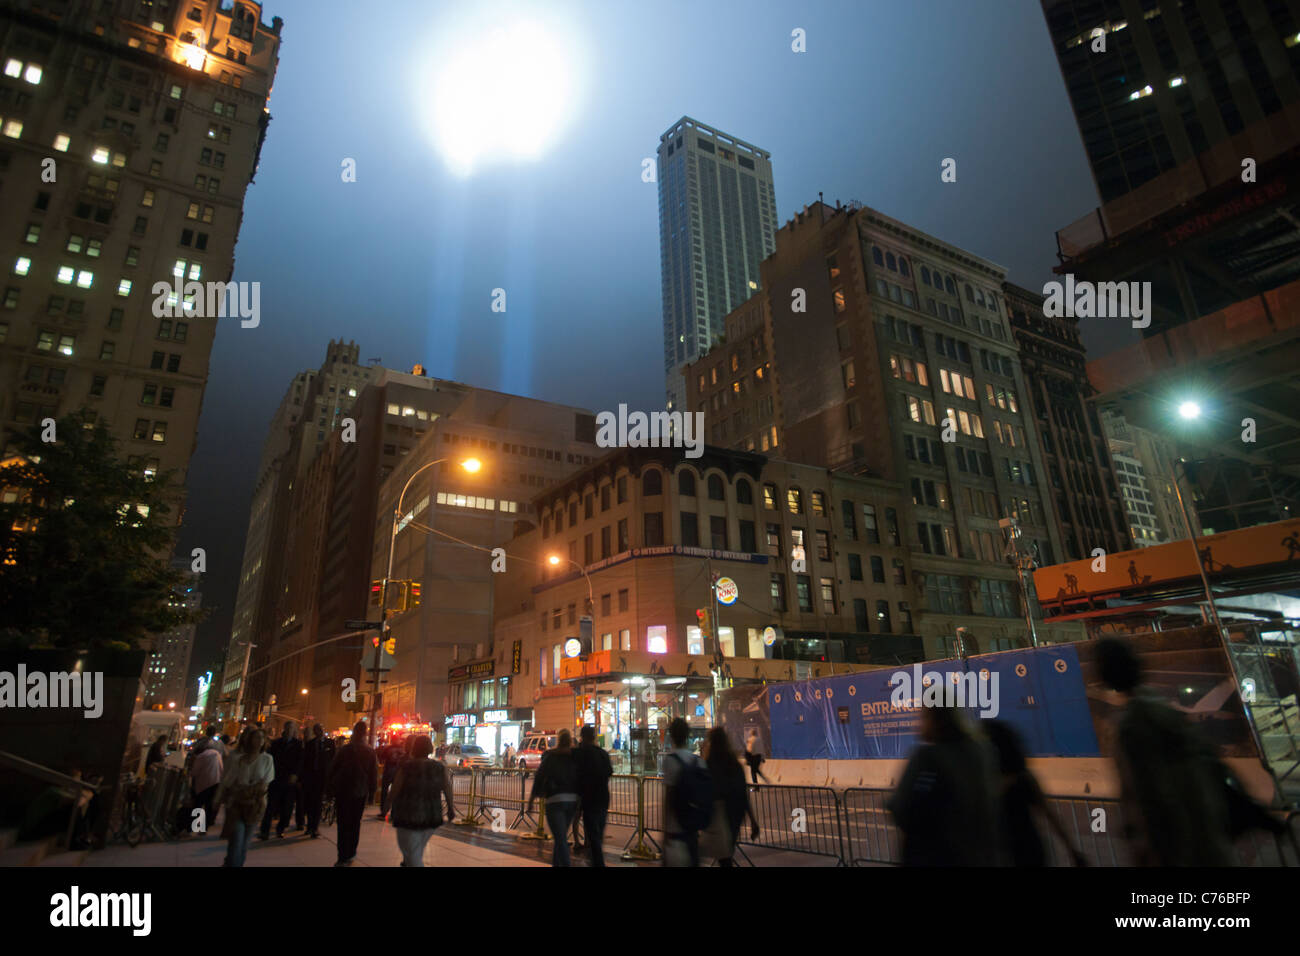 Die zwei Strahlen der Tribute In Light schießen zum Himmel für den zehnten Jahrestag der terroristischen Anschläge vom 11. September in New York Stockfoto